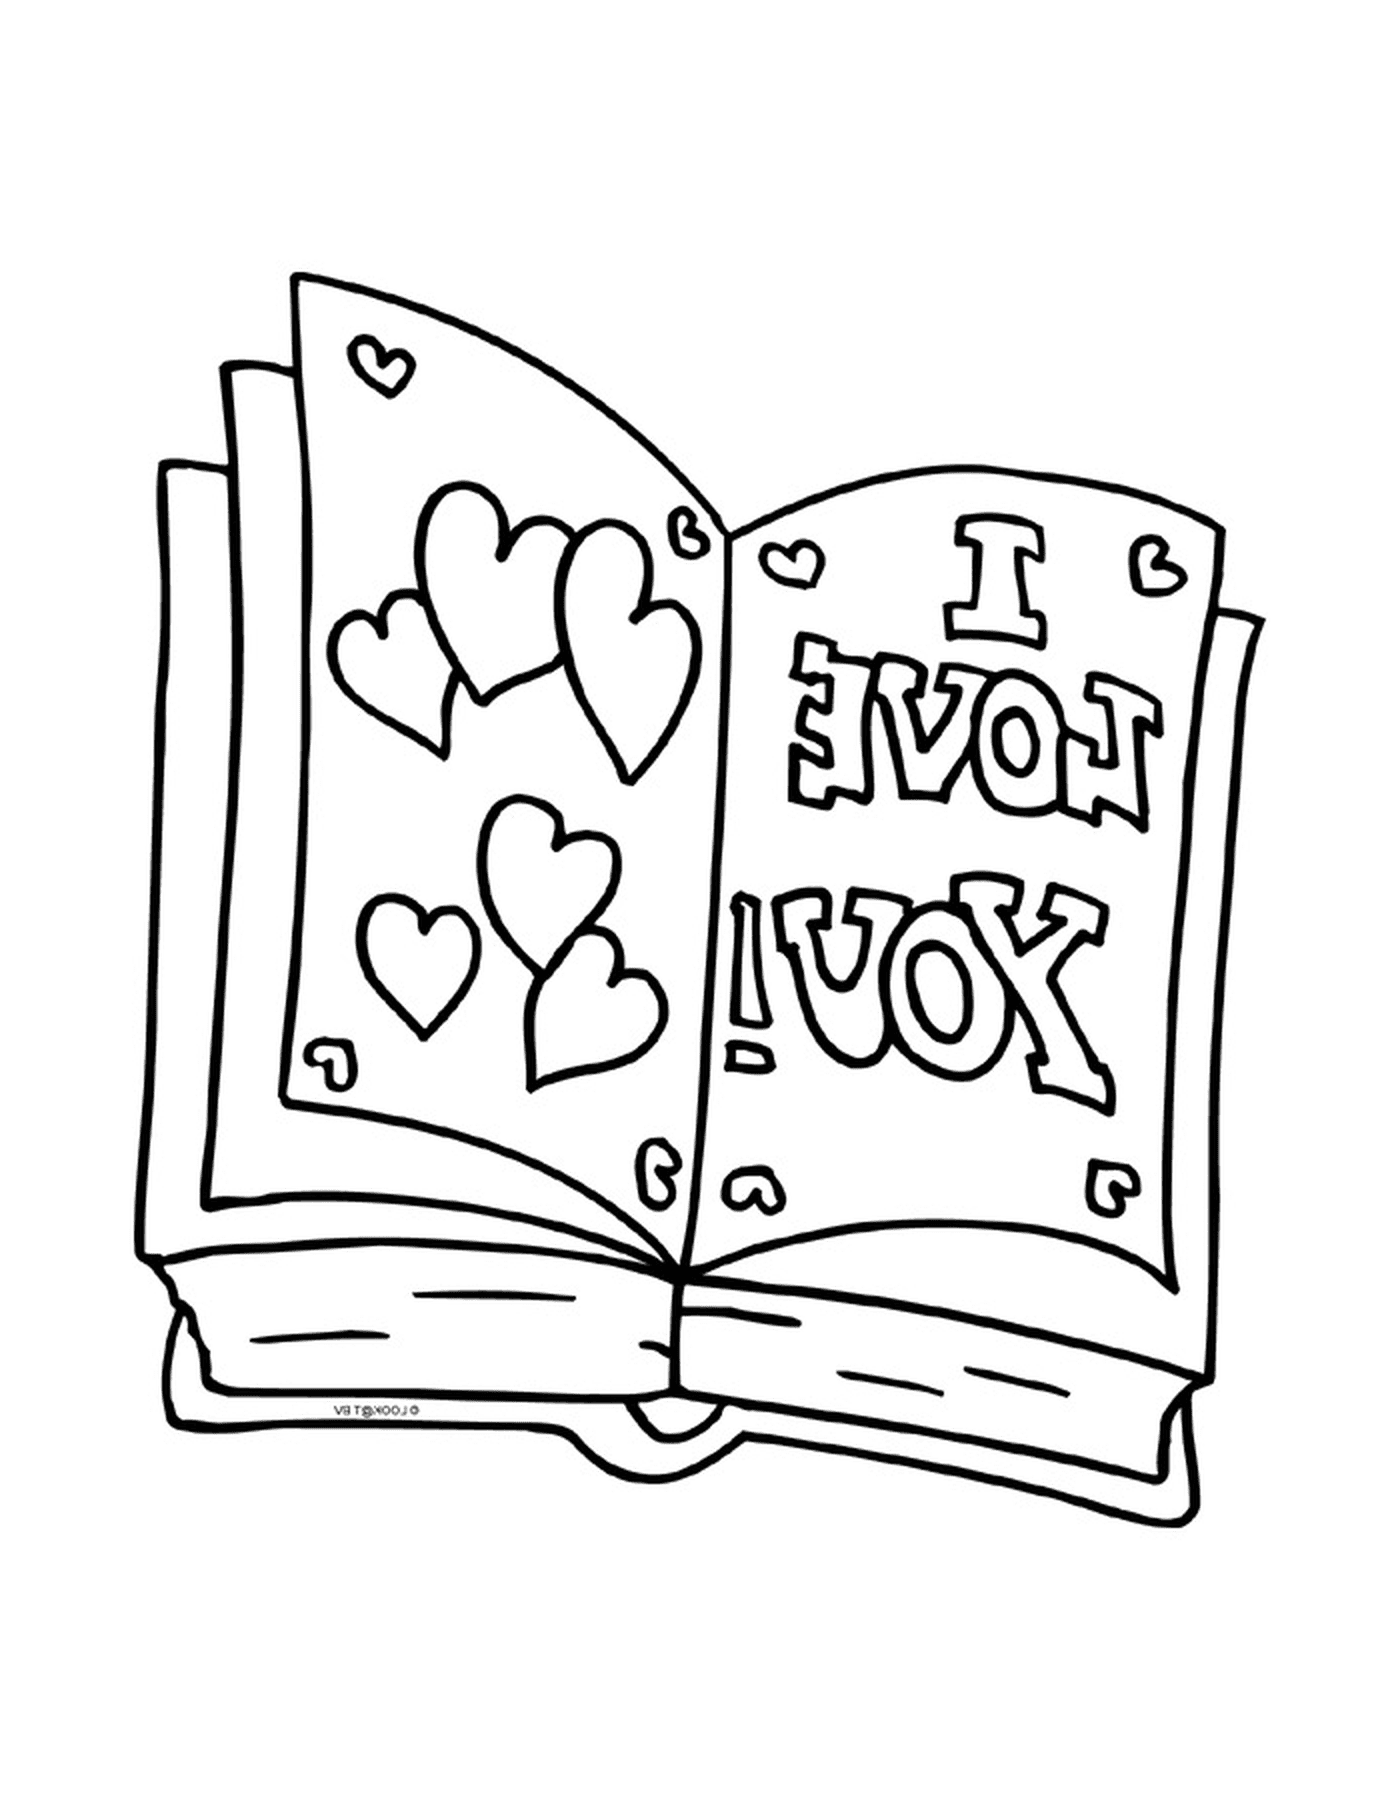  كتاب مفتوح يقول أني أحبك 